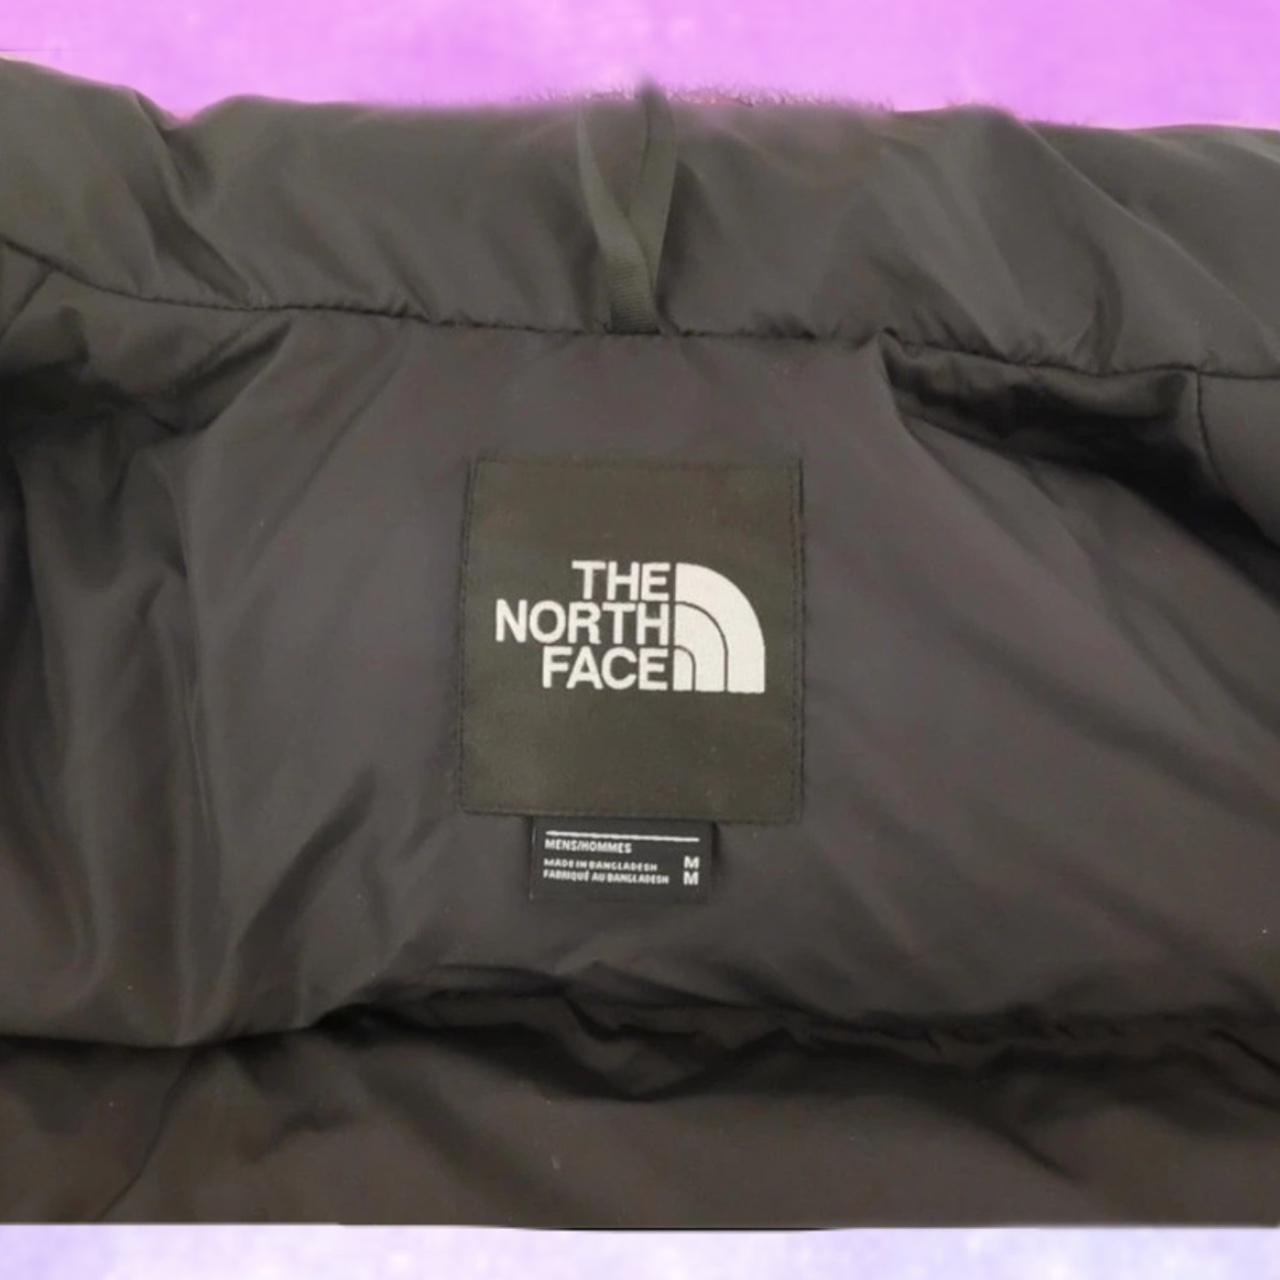 The North Face Nuptse 700 Retro 1996 Jacket ... - Depop